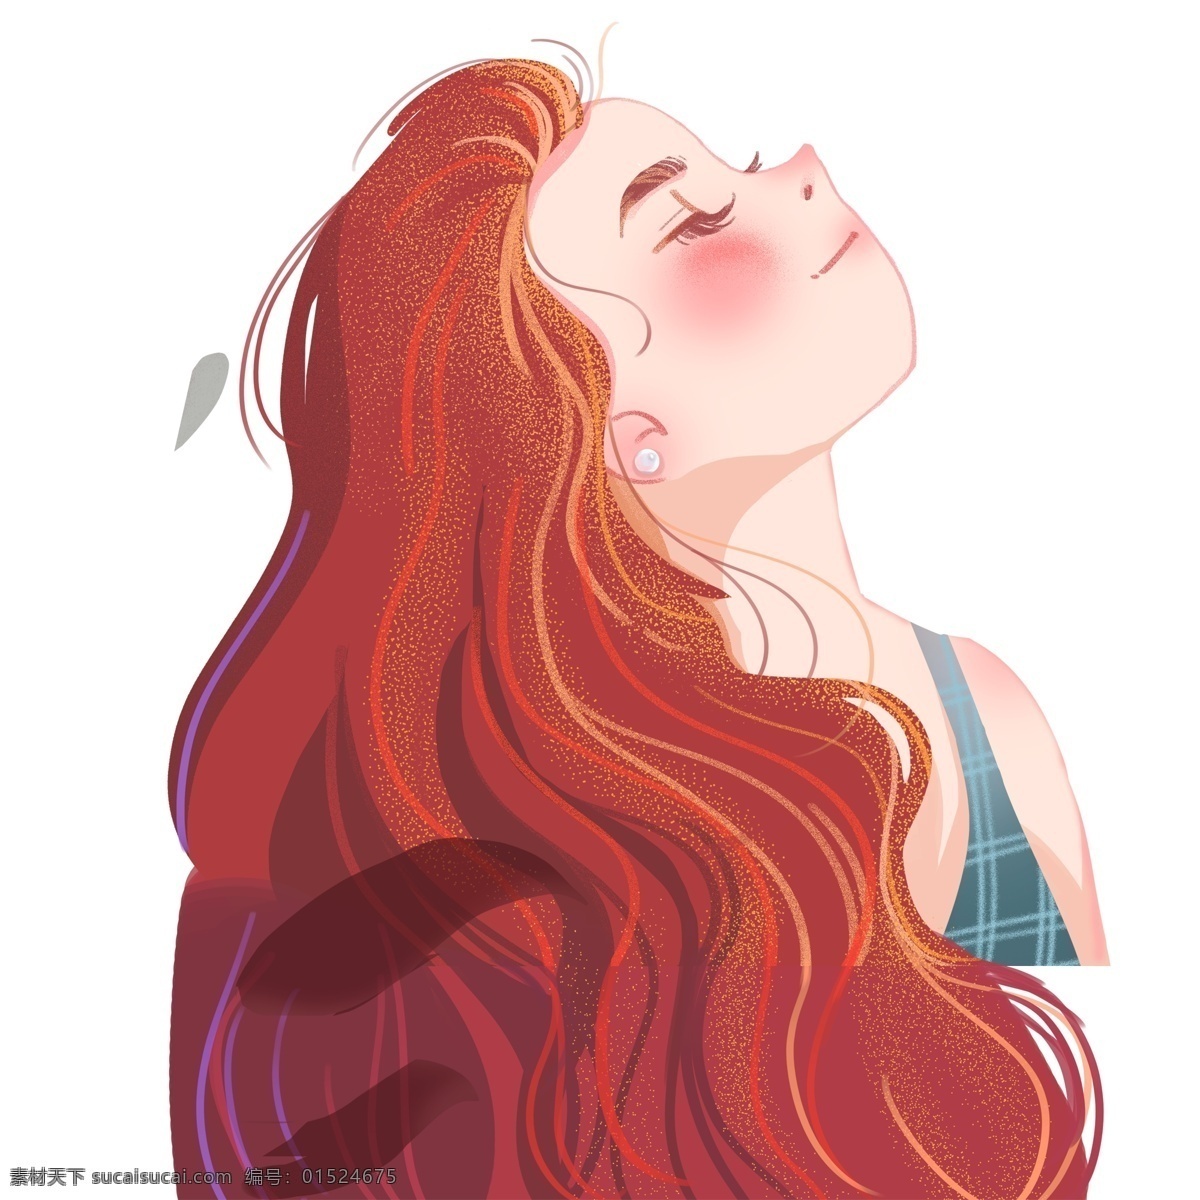 红色 长头 发 女孩 插画 长头发 人物 卡通 彩色 水彩 小清新 创意 装饰 图案 手绘风